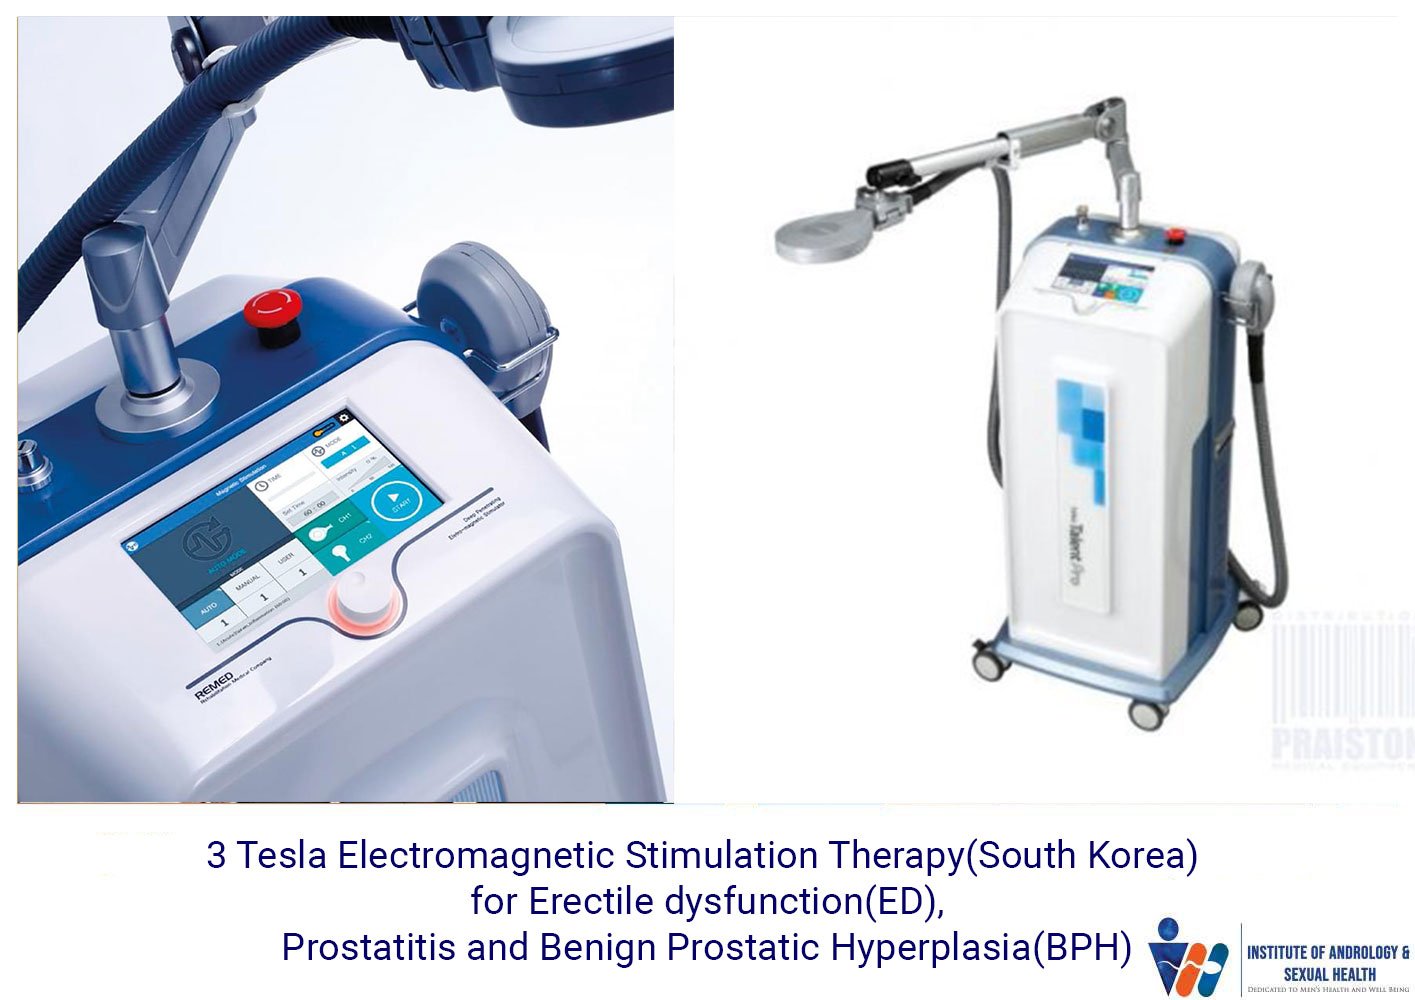 3 Tesla Electromagnetic Stimulation Therapy(South Korea) for Erectile dysfunction(ED), Prostatitis and Benign Prostatic Hyperplasia(BPH)